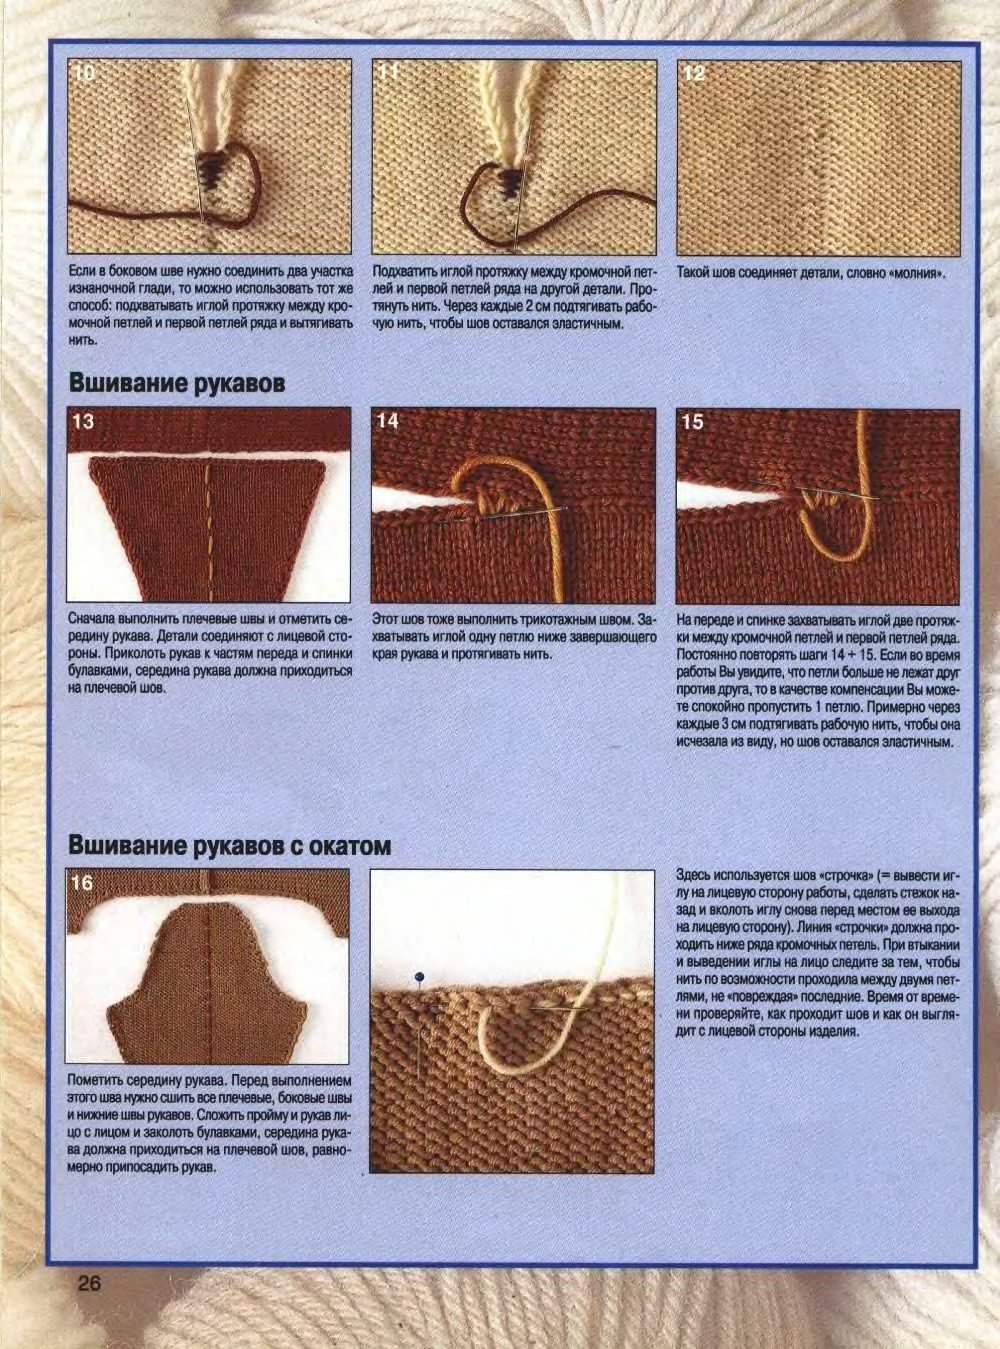 Какими стежками сшивают вязаные детали одежды